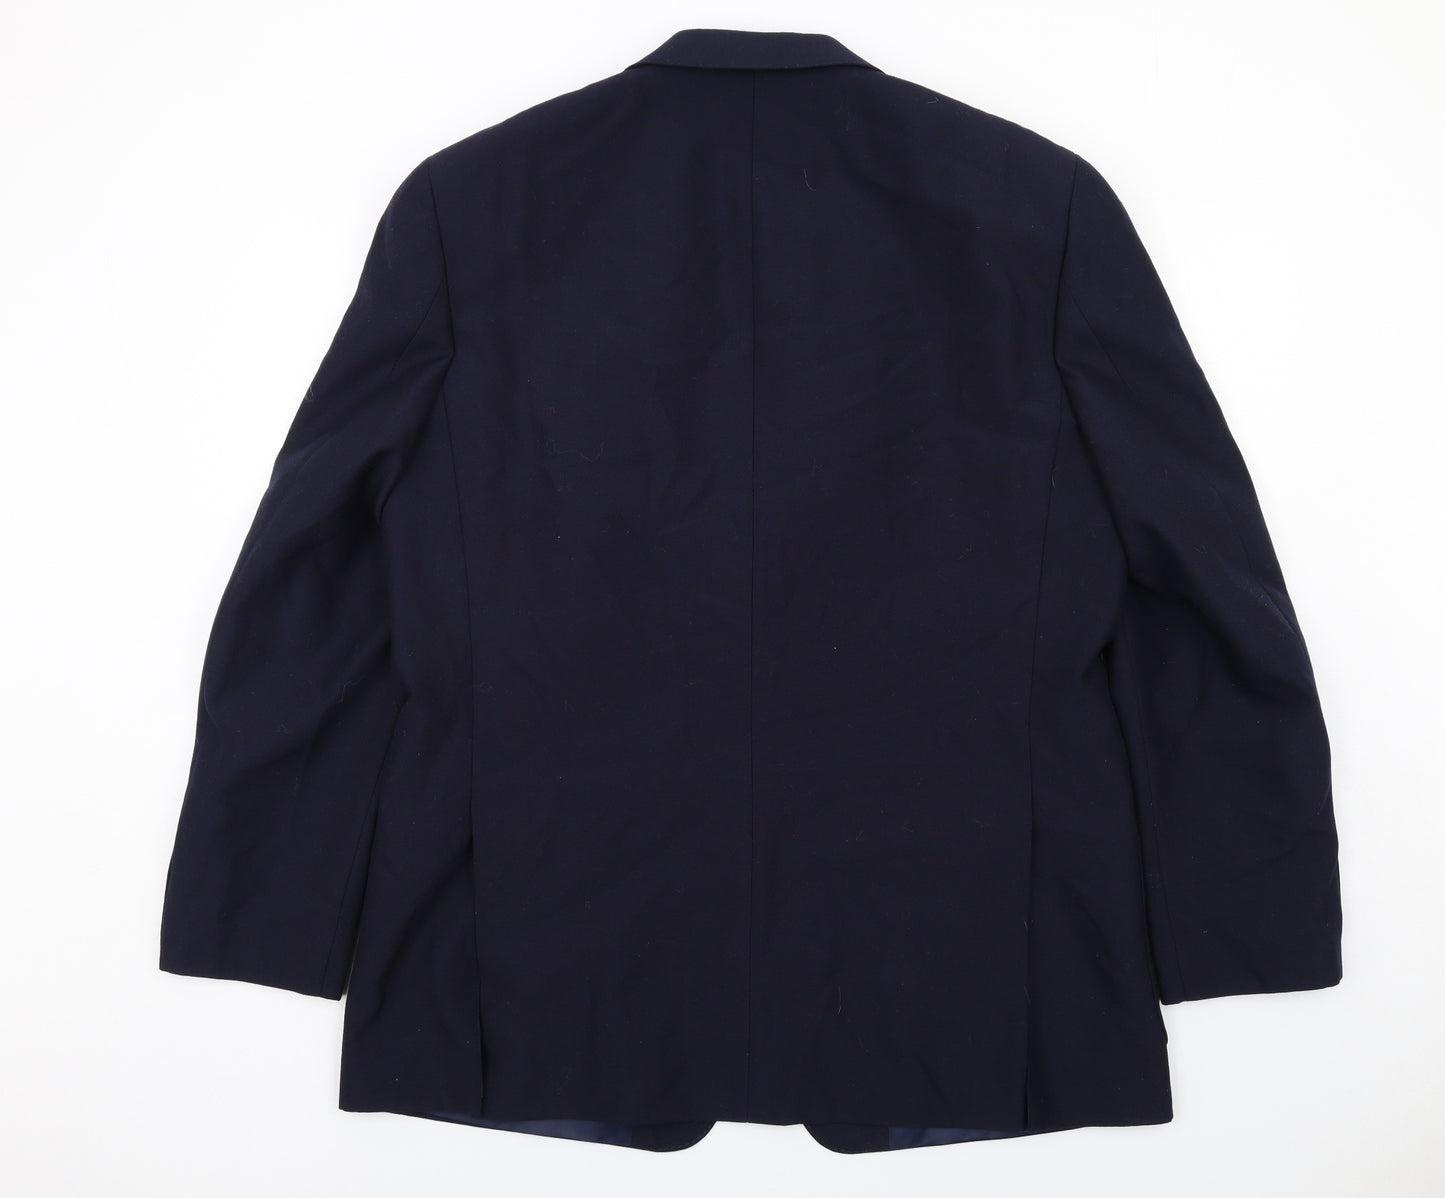 Brook Taverner Mens Blue Polyester Jacket Suit Jacket Size 44 Regular